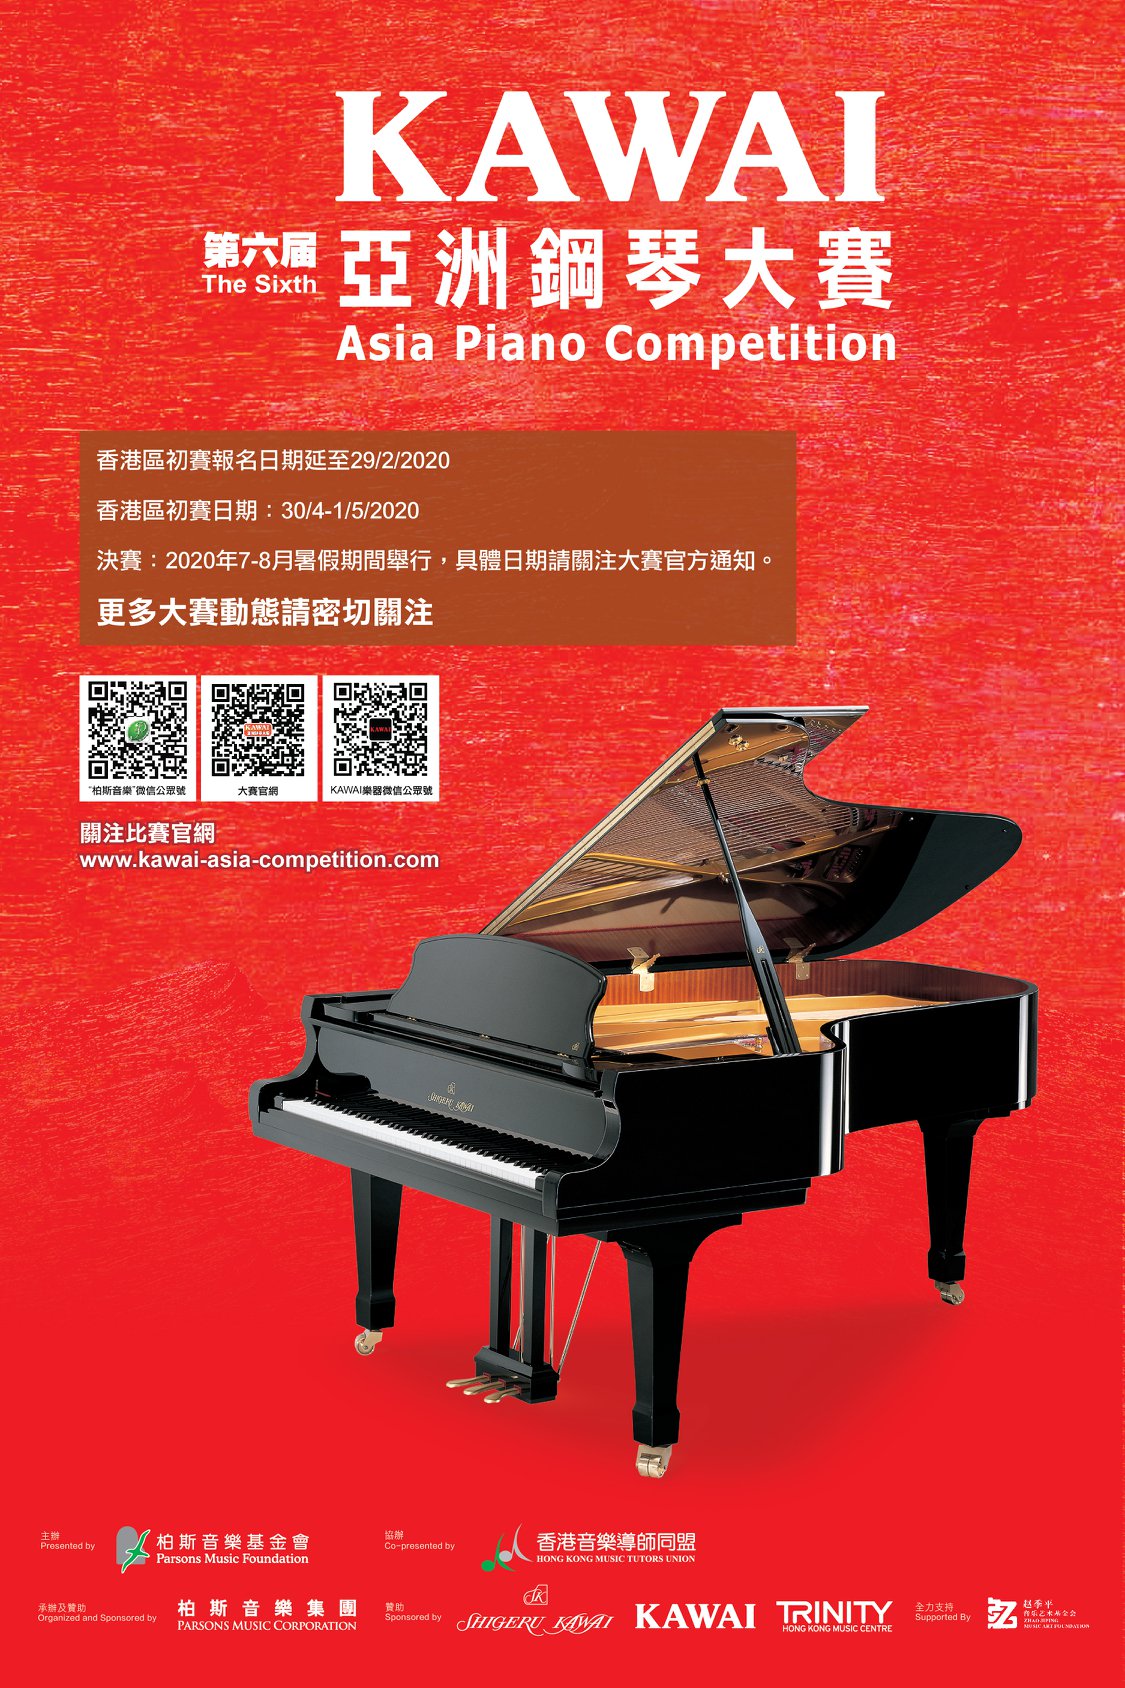 【最新消息】KAWAI第六屆亞洲鋼琴大賽 (香港區初賽)  📍香港區初賽截止報名日期將延至 29/2/2020。